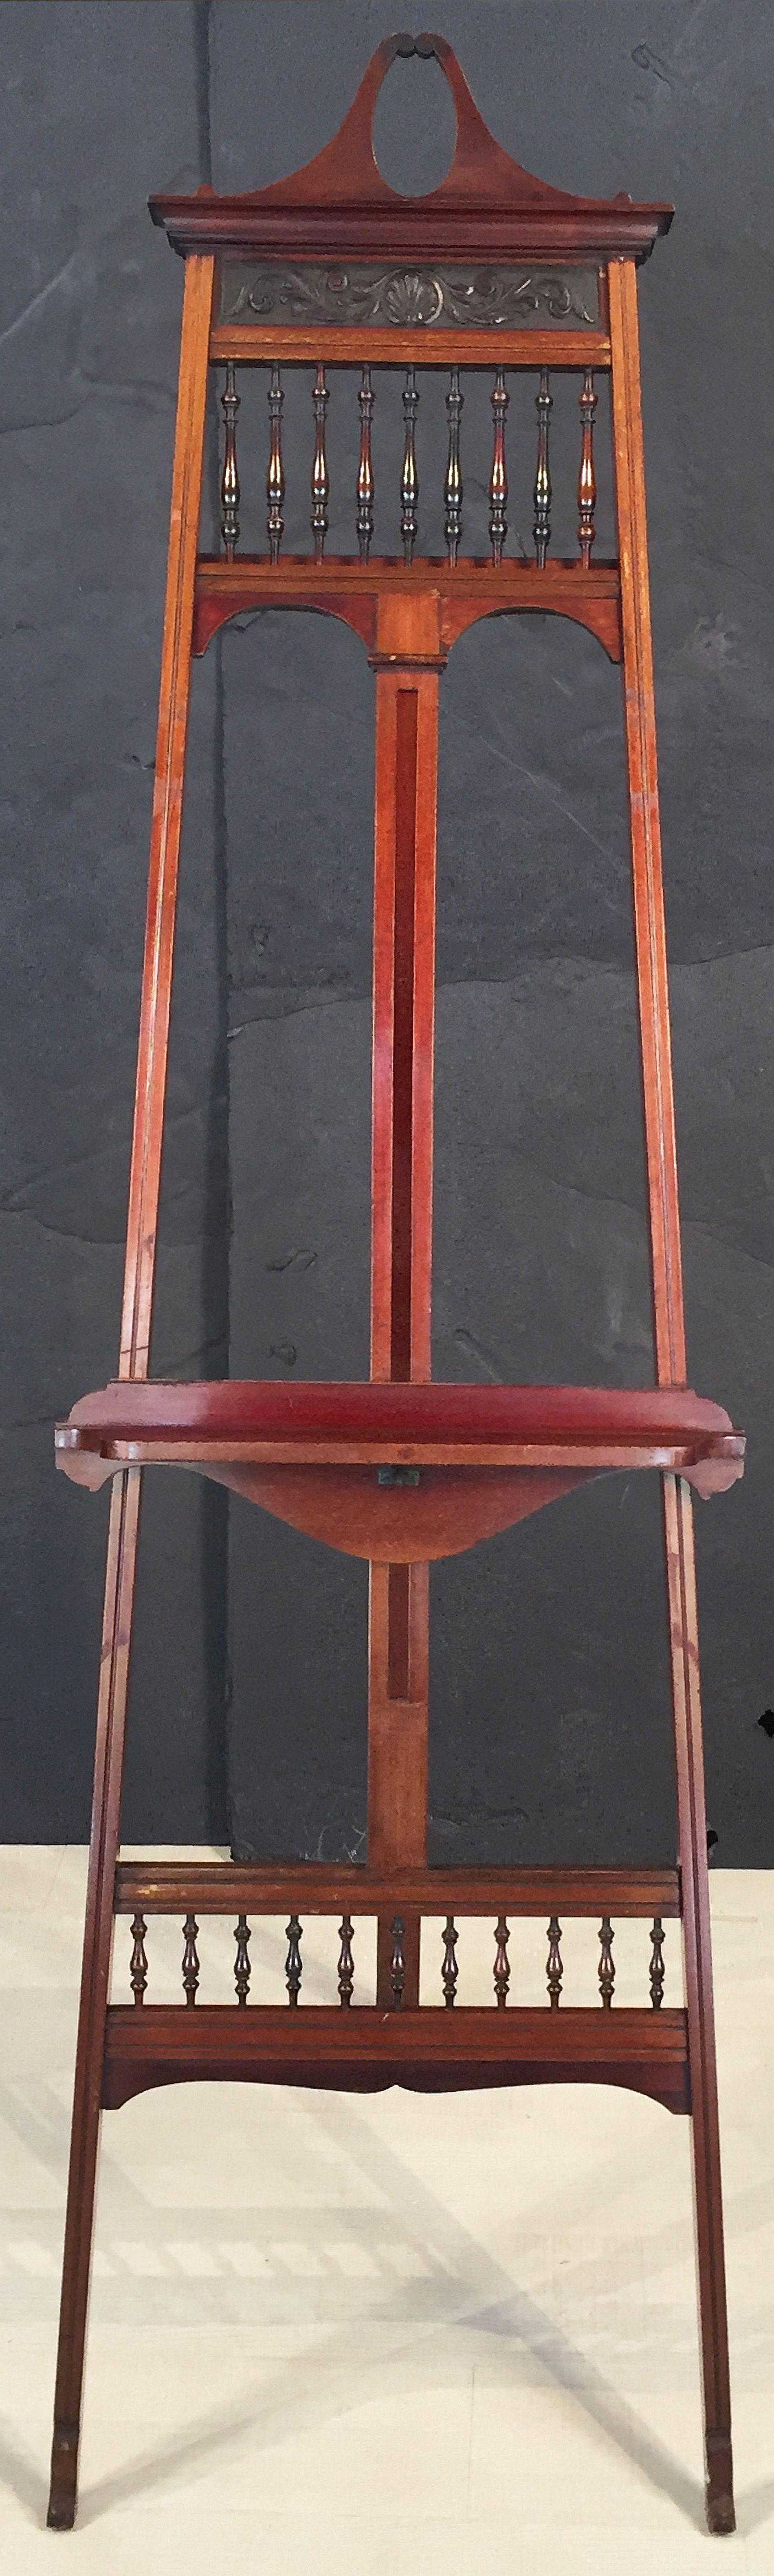 Eine hübsche englische Galerie- oder Atelierstaffelei aus dem 19. Jahrhundert mit einem Schiebemechanismus aus Messing und Mahagoni, um die Höhe des Tabletts zu verstellen, mit gedrechselten Mahagonispindeln an Ober- und Unterseite.

Die Abmessungen